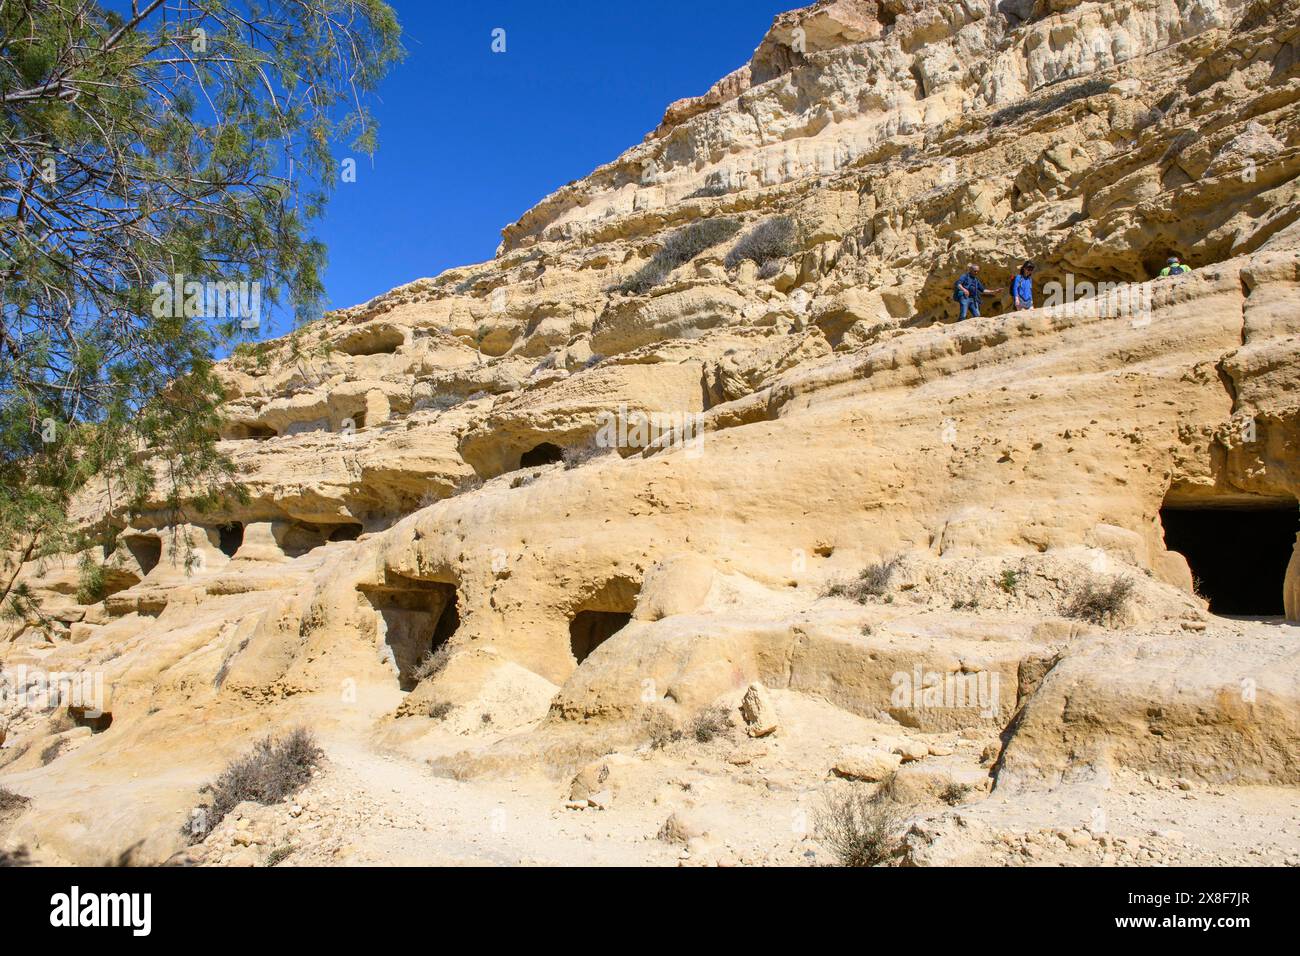 Vista degli ingressi alle grotte nelle scogliere di arenaria dell'ex necropoli romana con grotte di arenaria scolpite in arenaria tombe di grotta Grotte in rocce Foto Stock